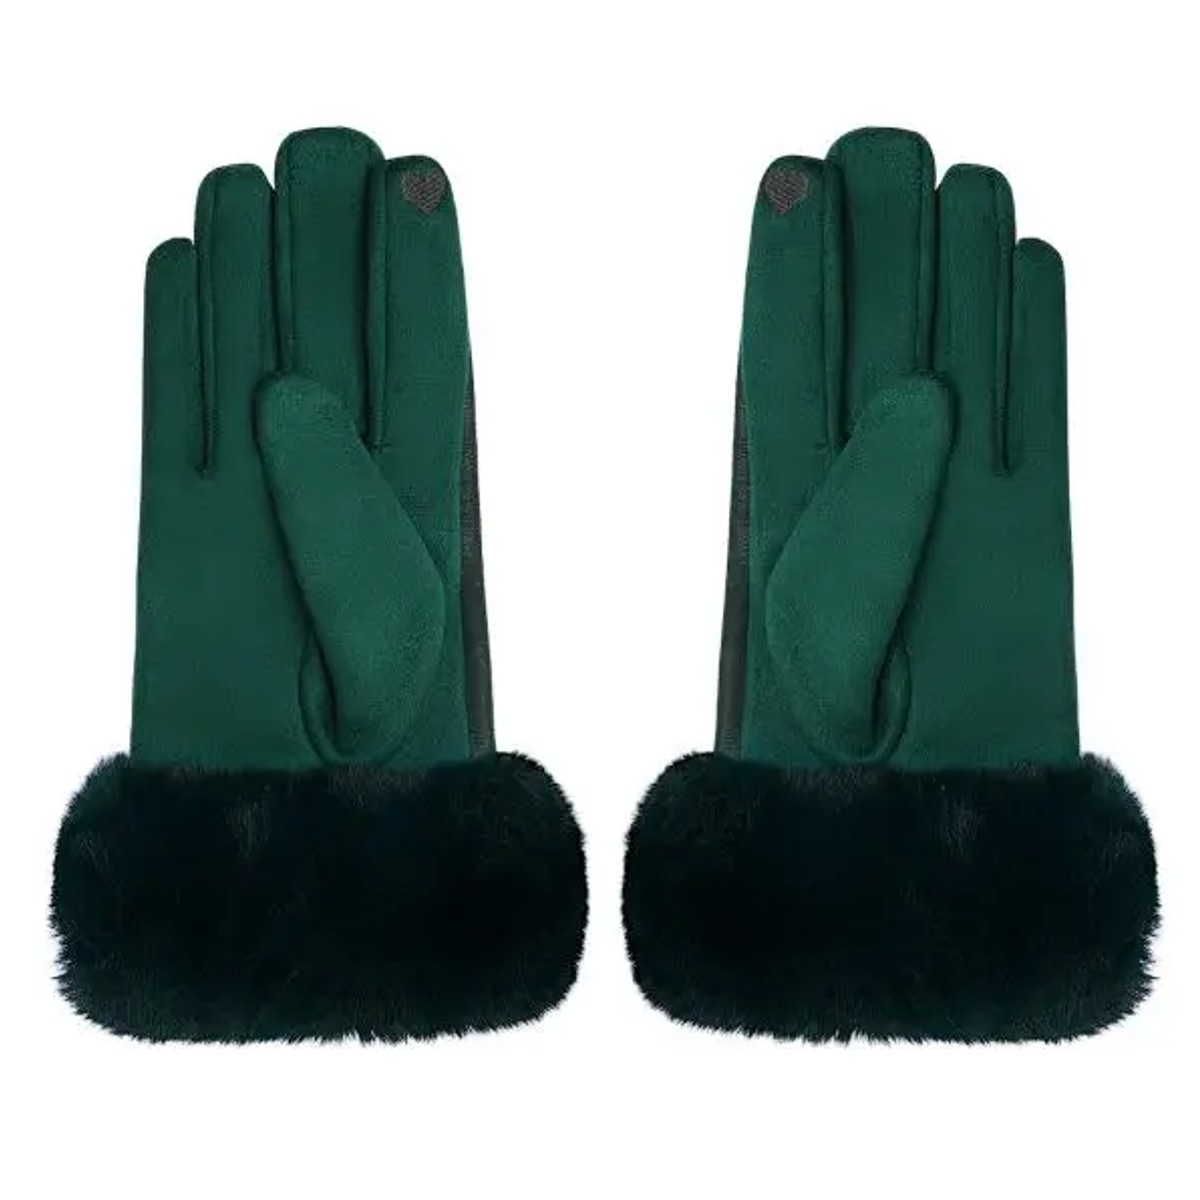 Handschoenen Faux Leer groen groene gloves handschoen dames bont kopen bestellen winter accessoires achterkant